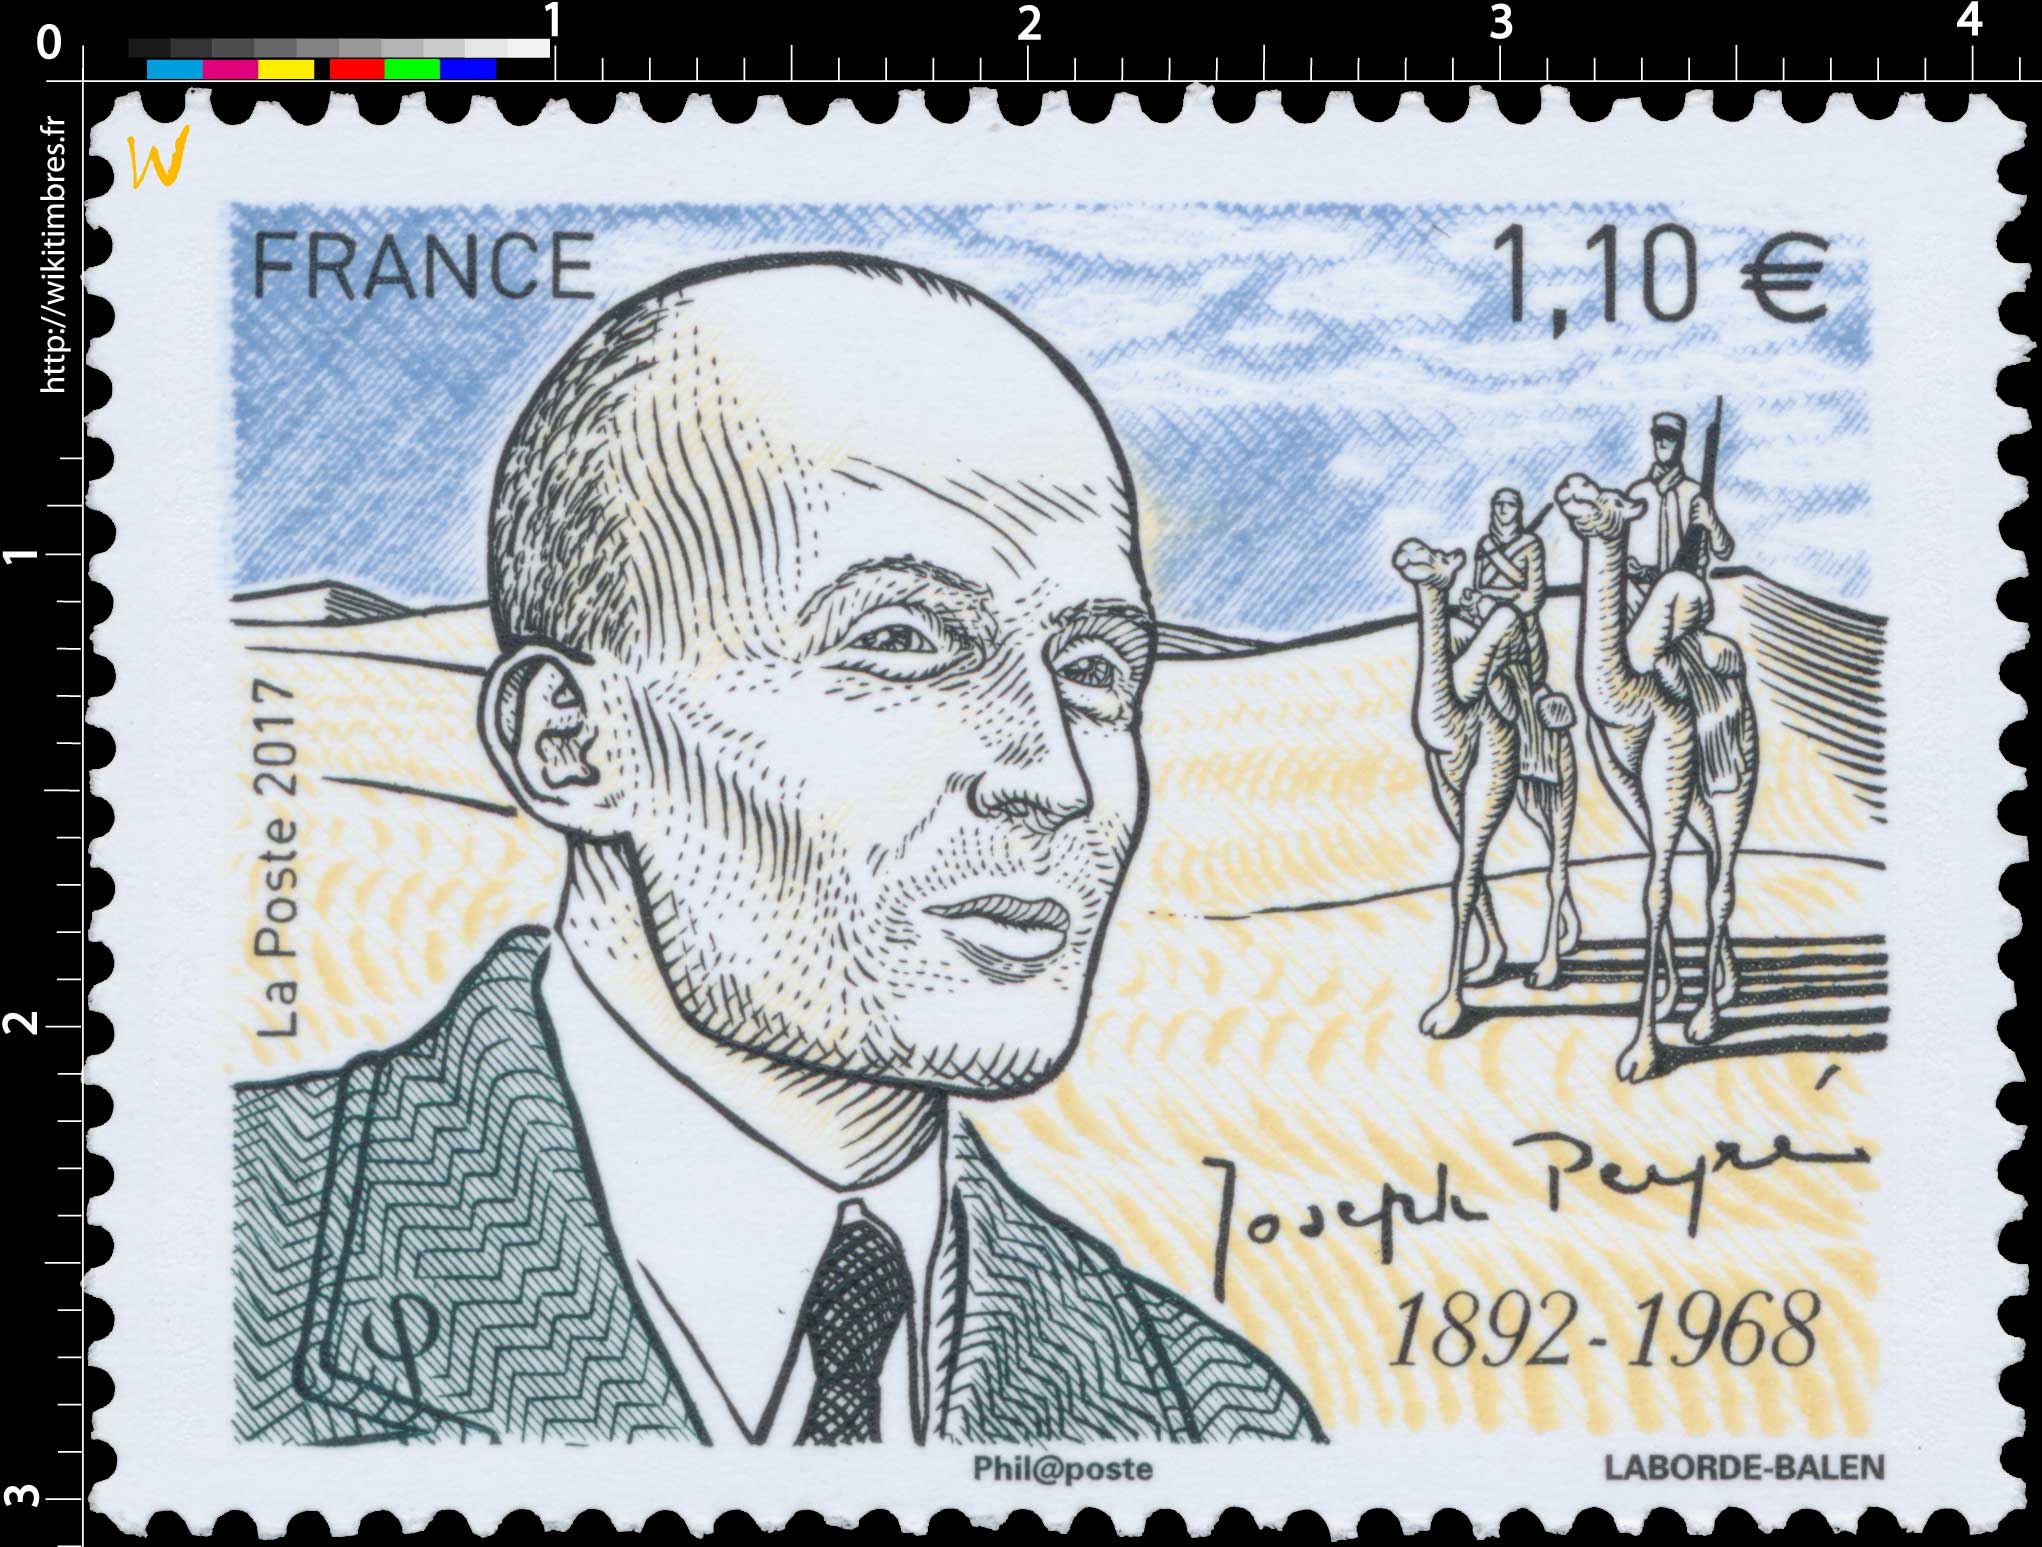 2017 Joseph Peyré 1892 - 1968